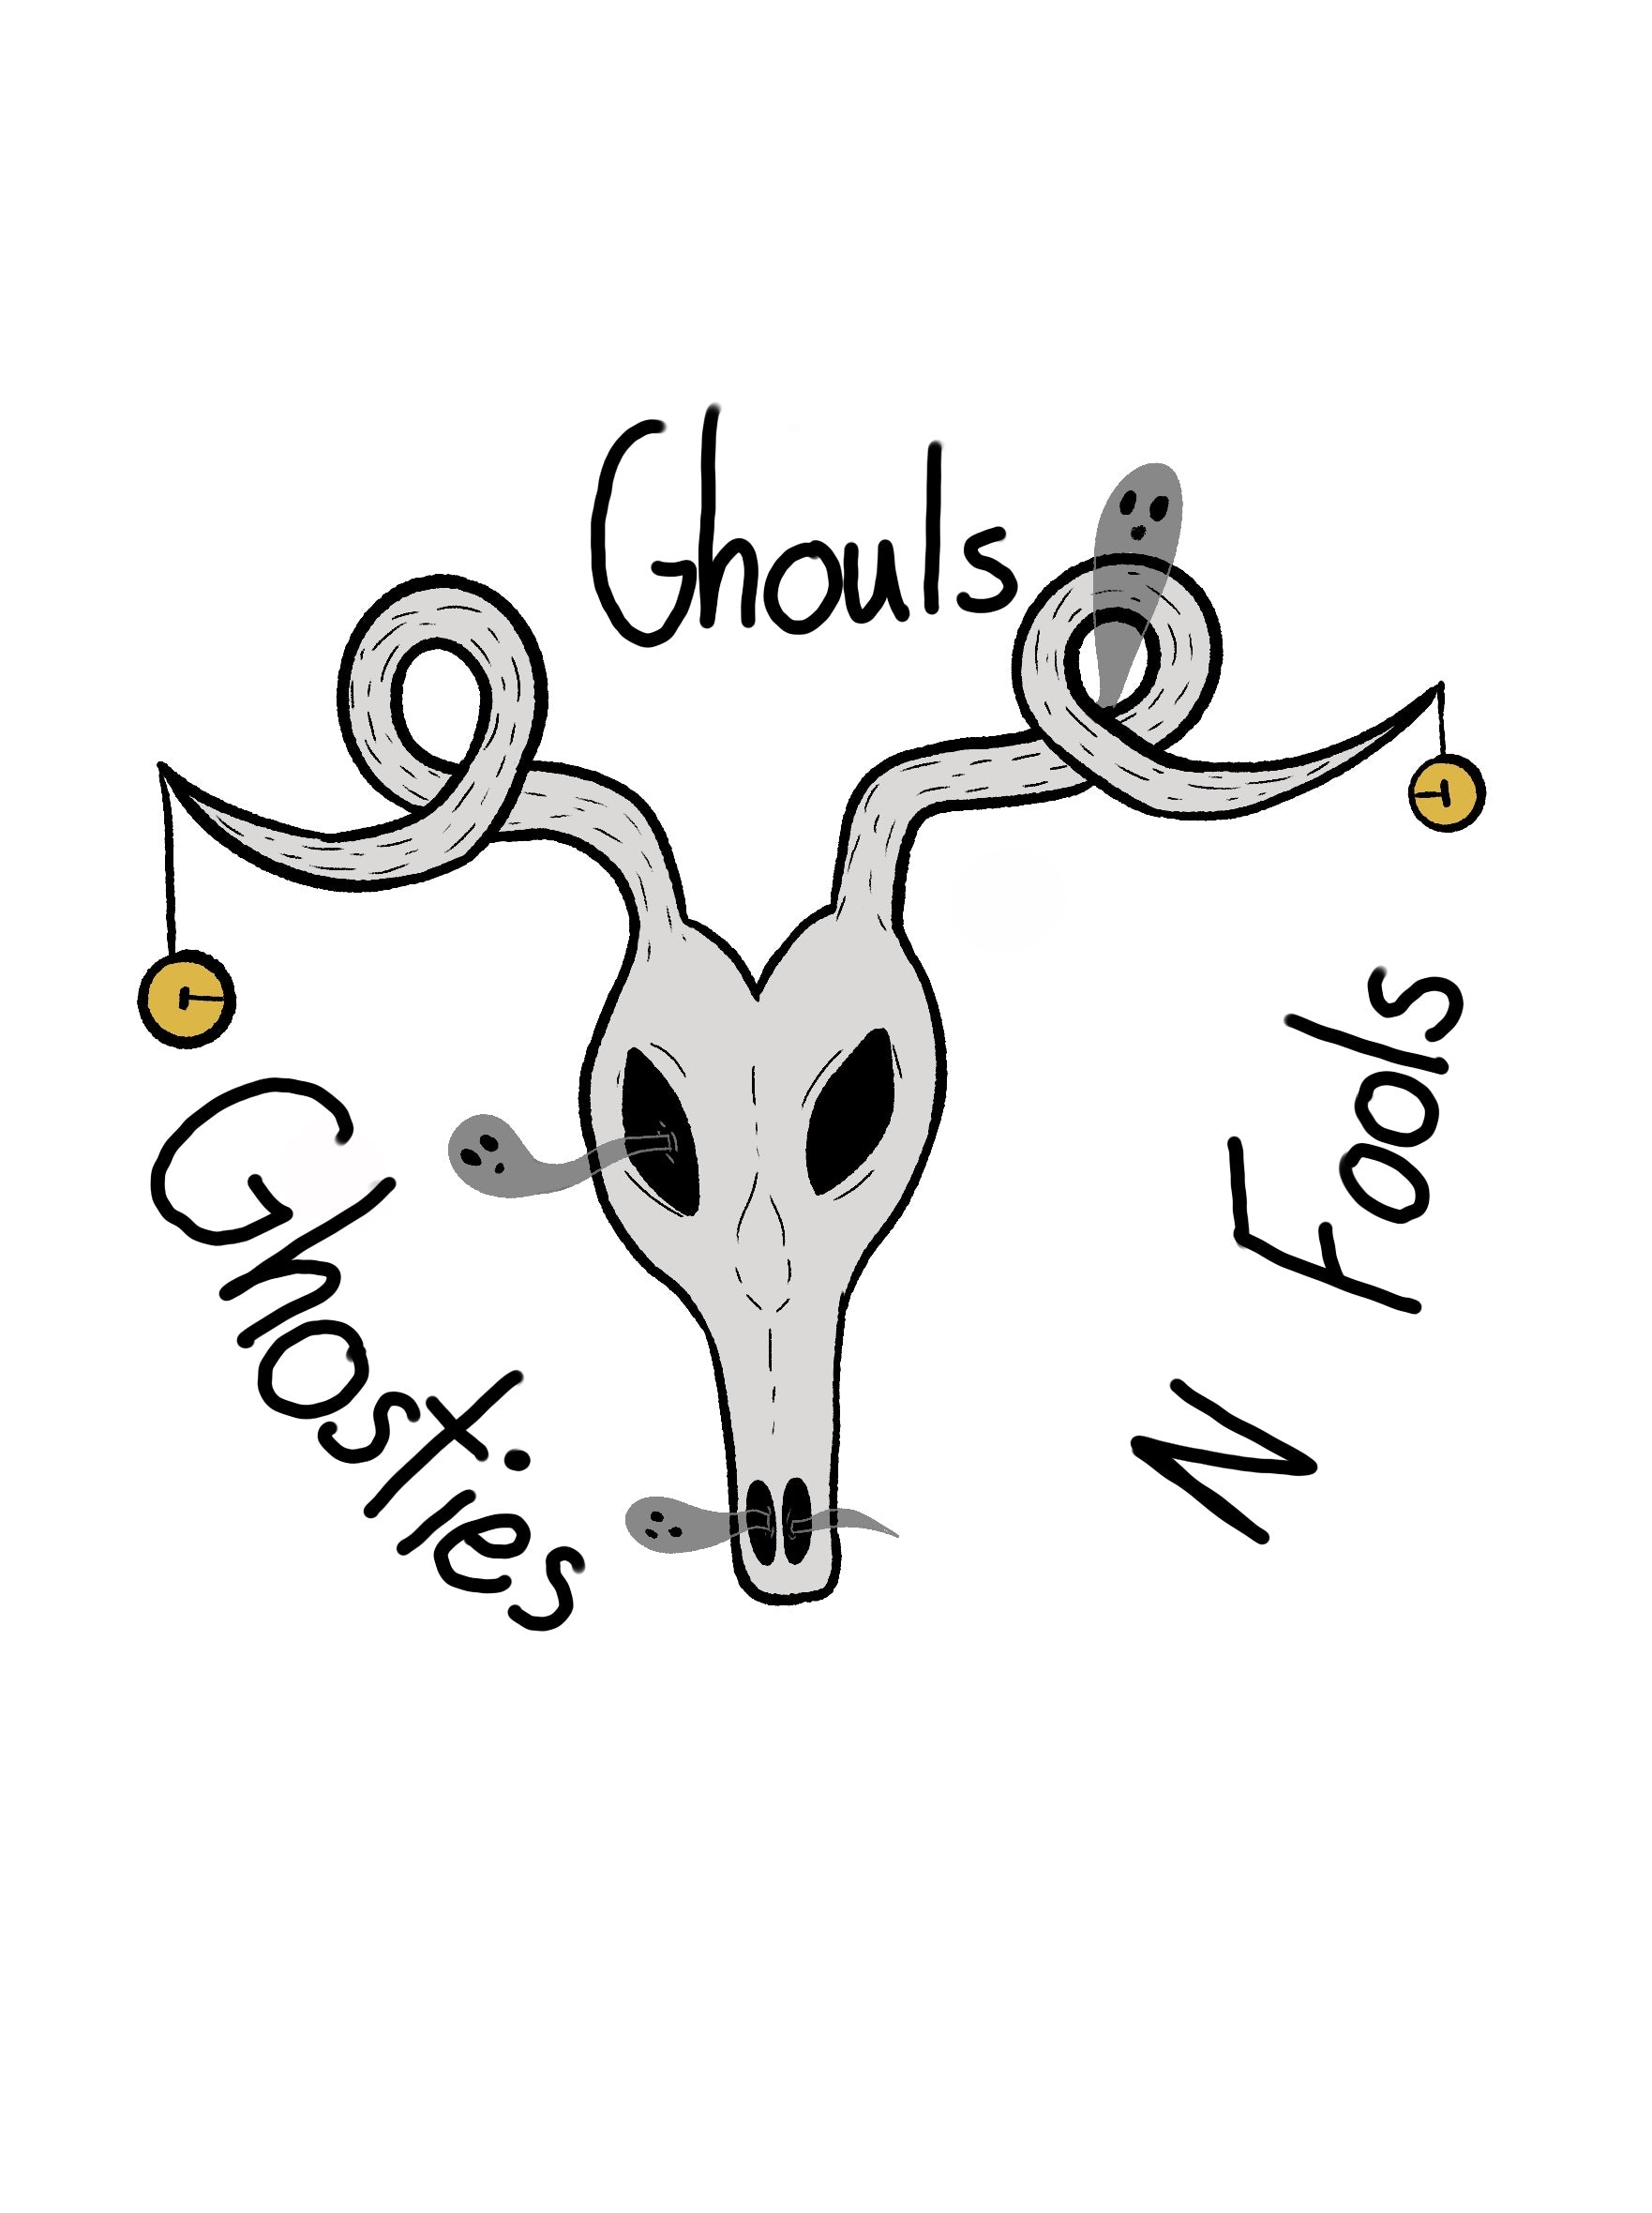 Ghouls_Ghosties_n_fools